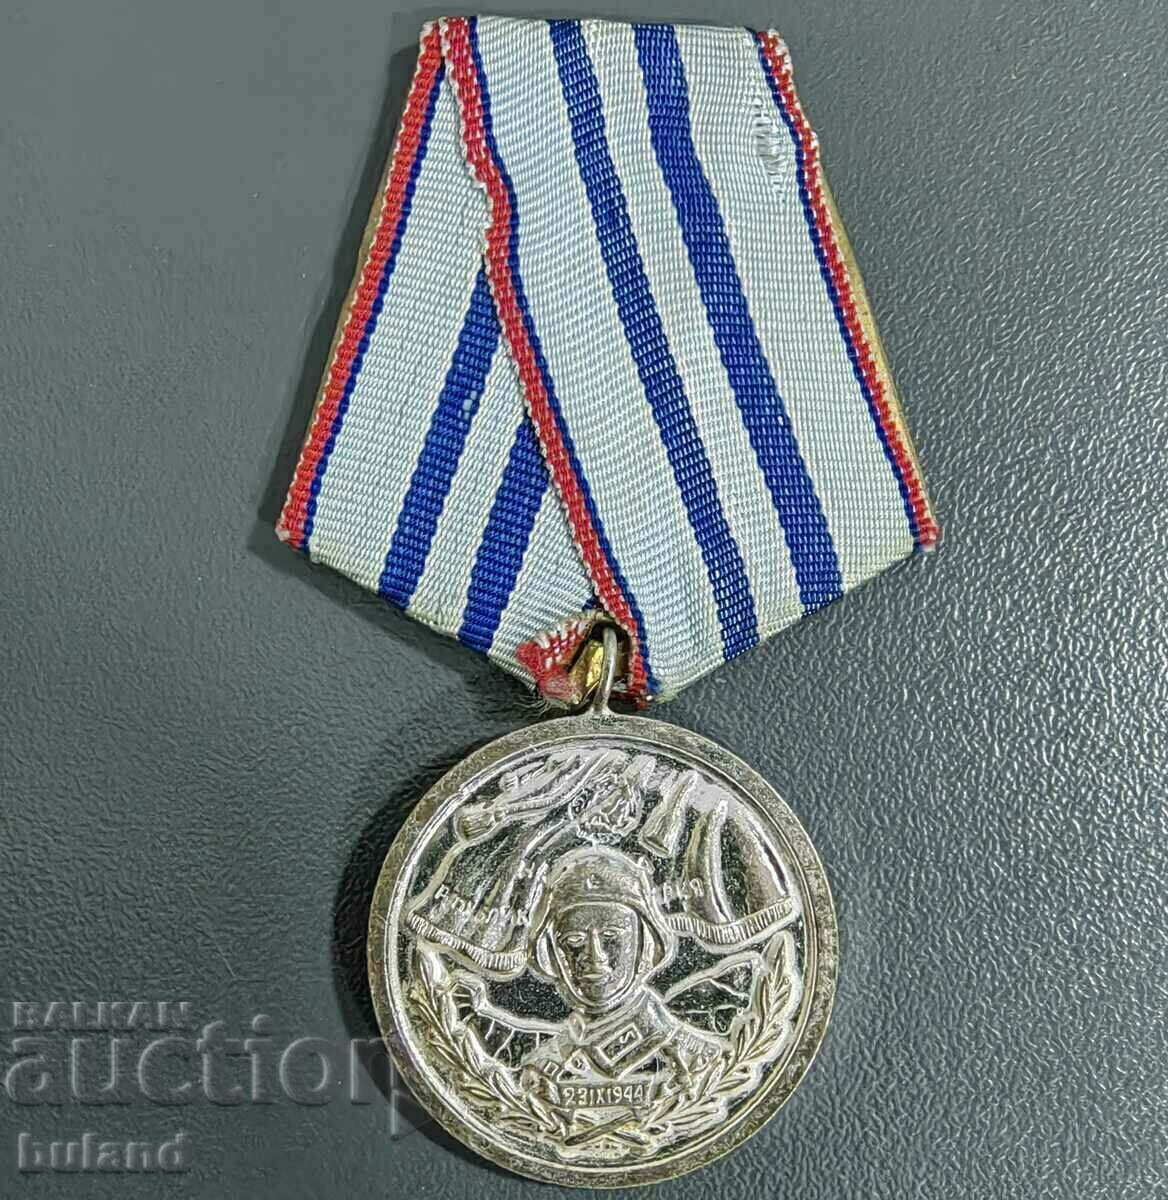 Βουλγαρικό Κοινωνικό Μετάλλιο 15 χρόνια Άψογη υπηρεσία στον στρατό BNA NRB